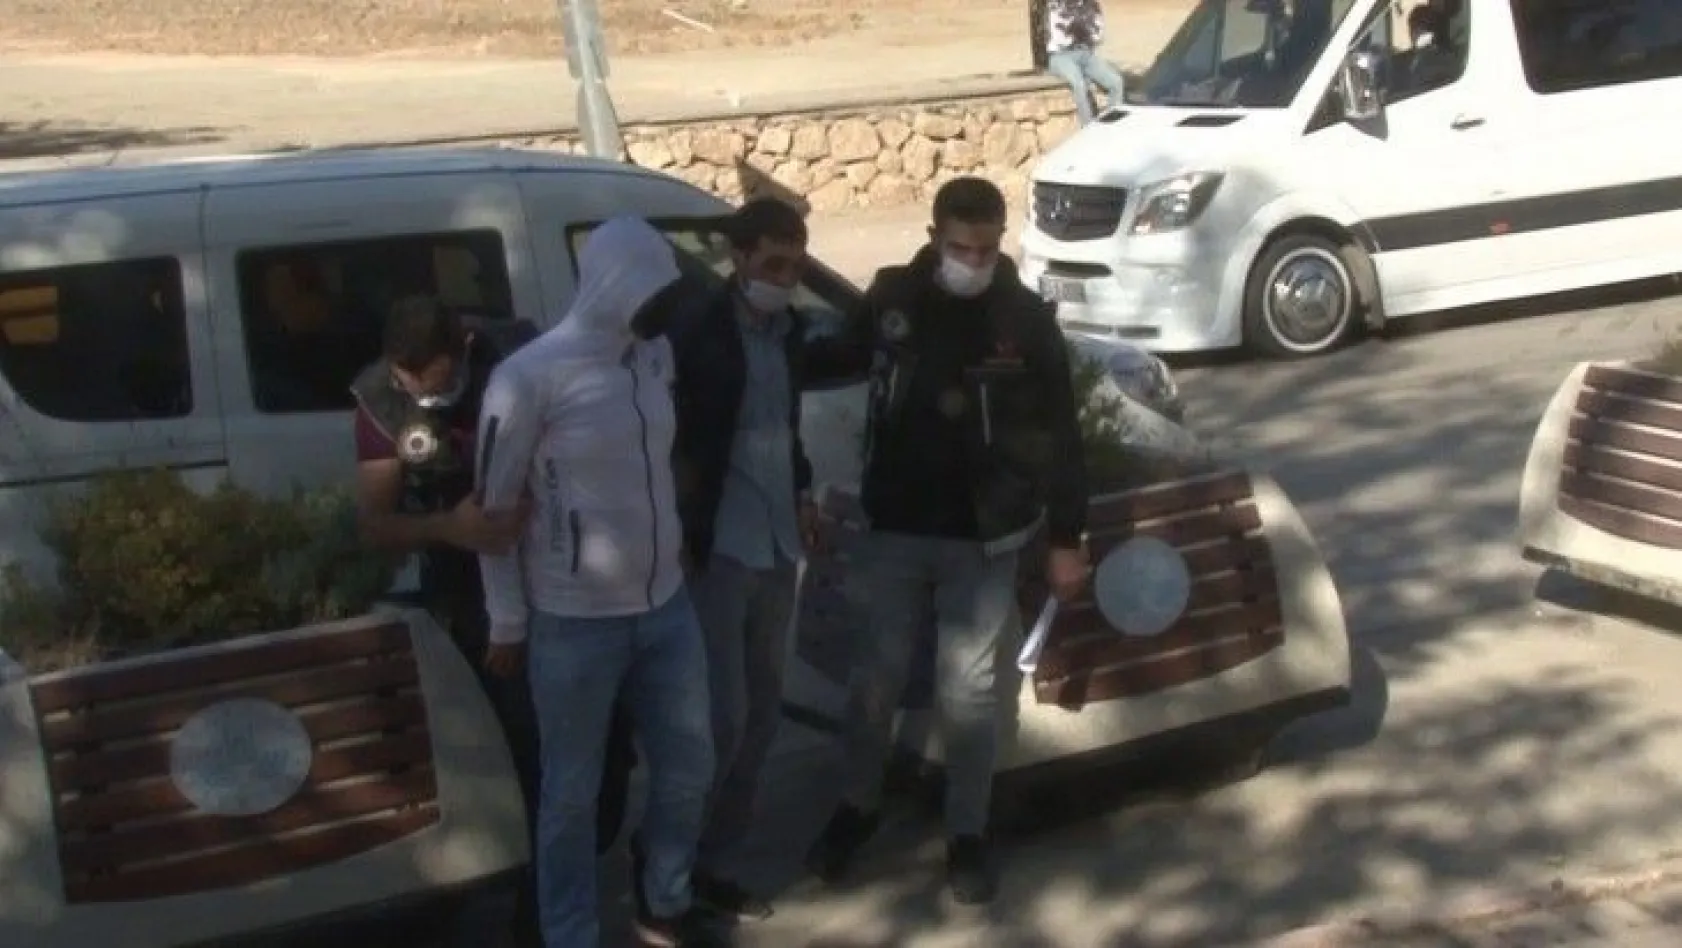 Elazığ'da uyuşturucu taciri 1 şüpheli tutuklandı